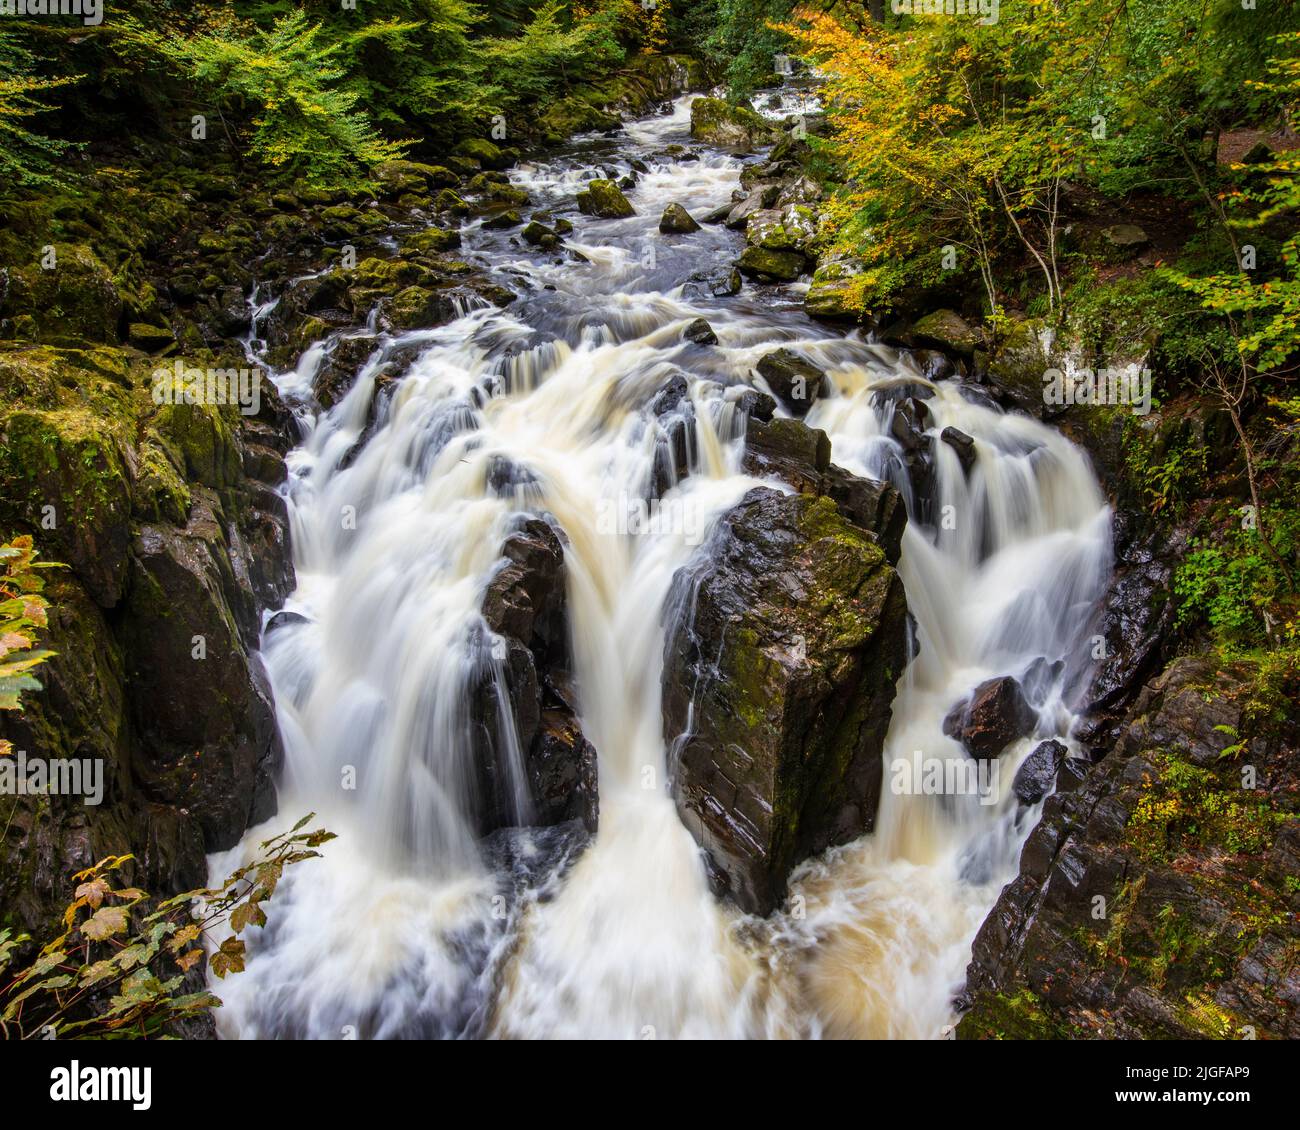 La splendida cascata Black Linn nel bosco dell'Hermitage, a Dunkeld, Scozia. Foto Stock